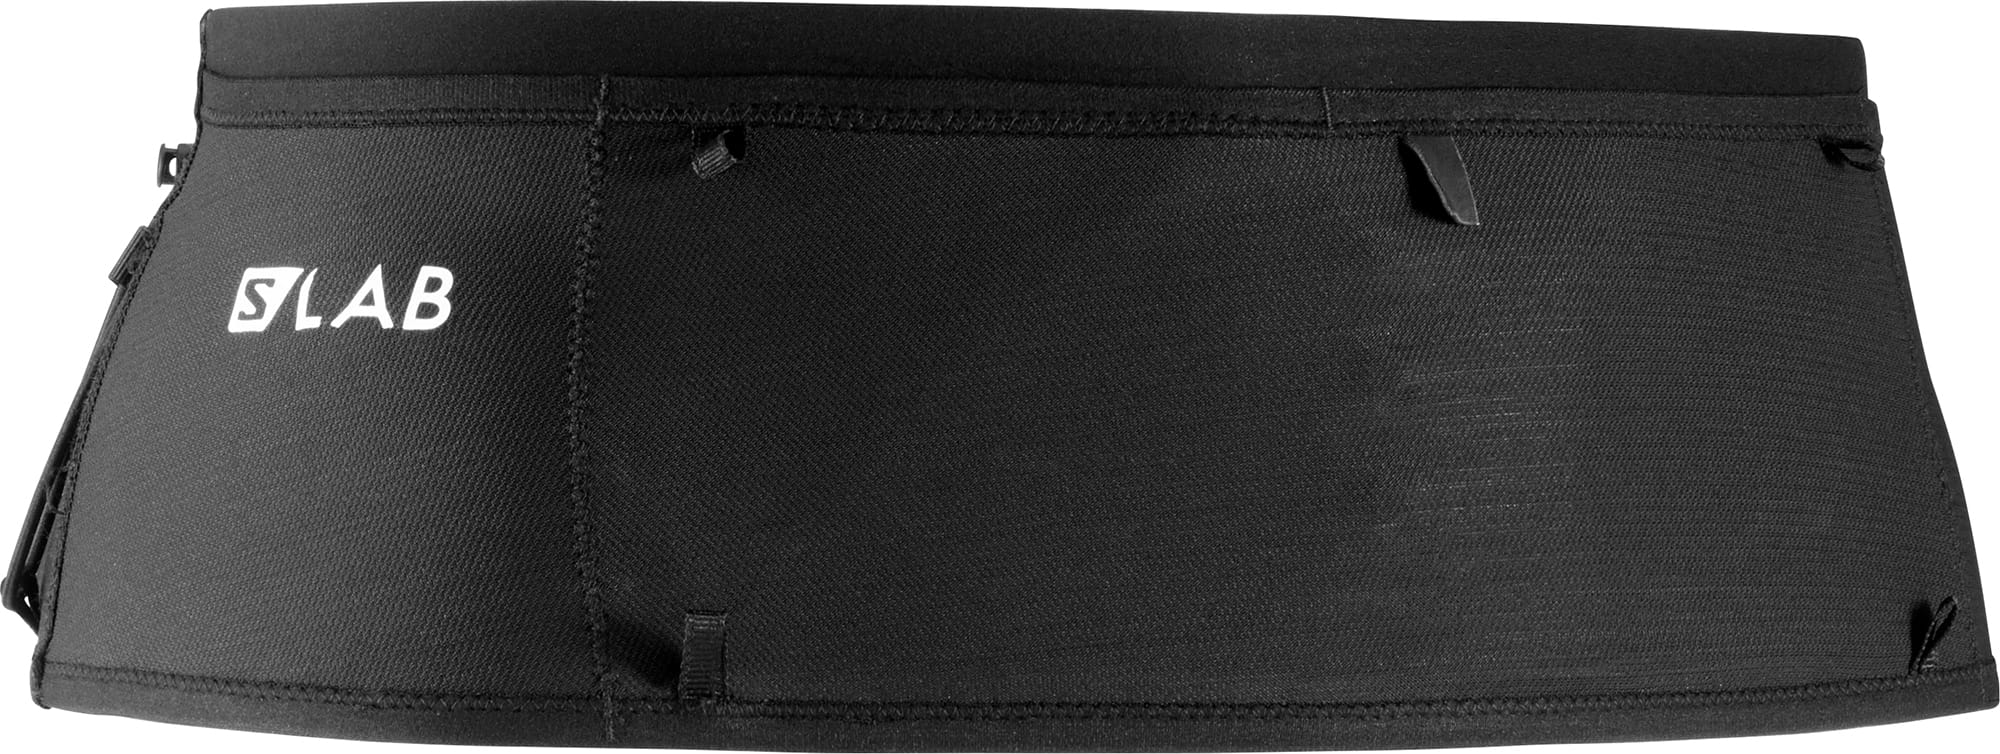 Pas biodrowy Salomon S/LAB Modular Belt U30 Black, rozmiar 2 :: Sklep  Sportowy - outlet sportowy, koncówki kolekcji, wyprzedaże, narty, deski,  wiązania, sprzet narciarski, buty sportowe